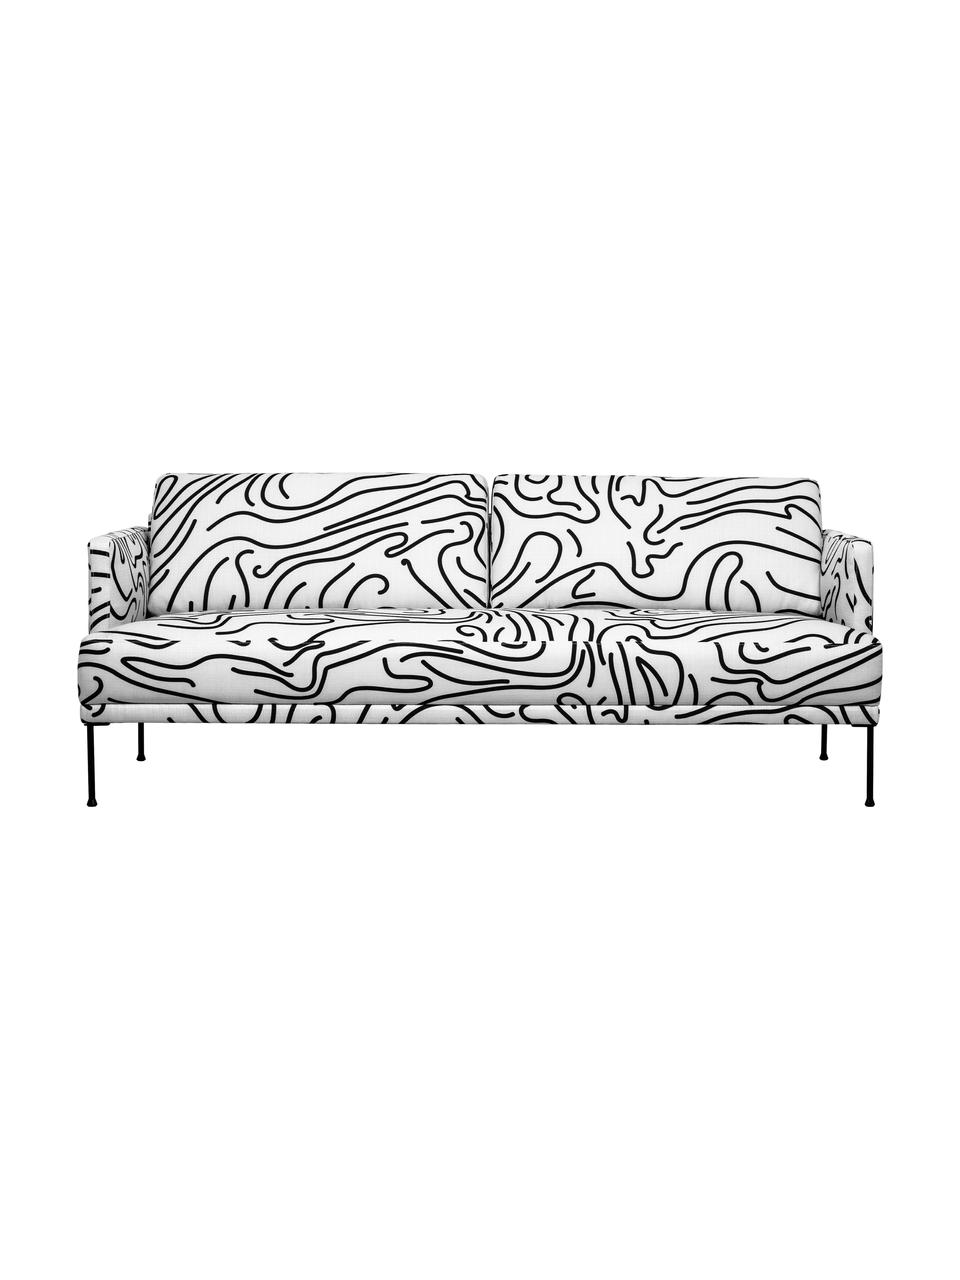 Gemustertes Sofa Fluente (3-Sitzer) mit Metall-Füssen, Bezug: 100% Polyester Der hochwe, Gestell: Massives Kiefernholz, Webstoff Weiss/Schwarz, B 196 x T 85 cm